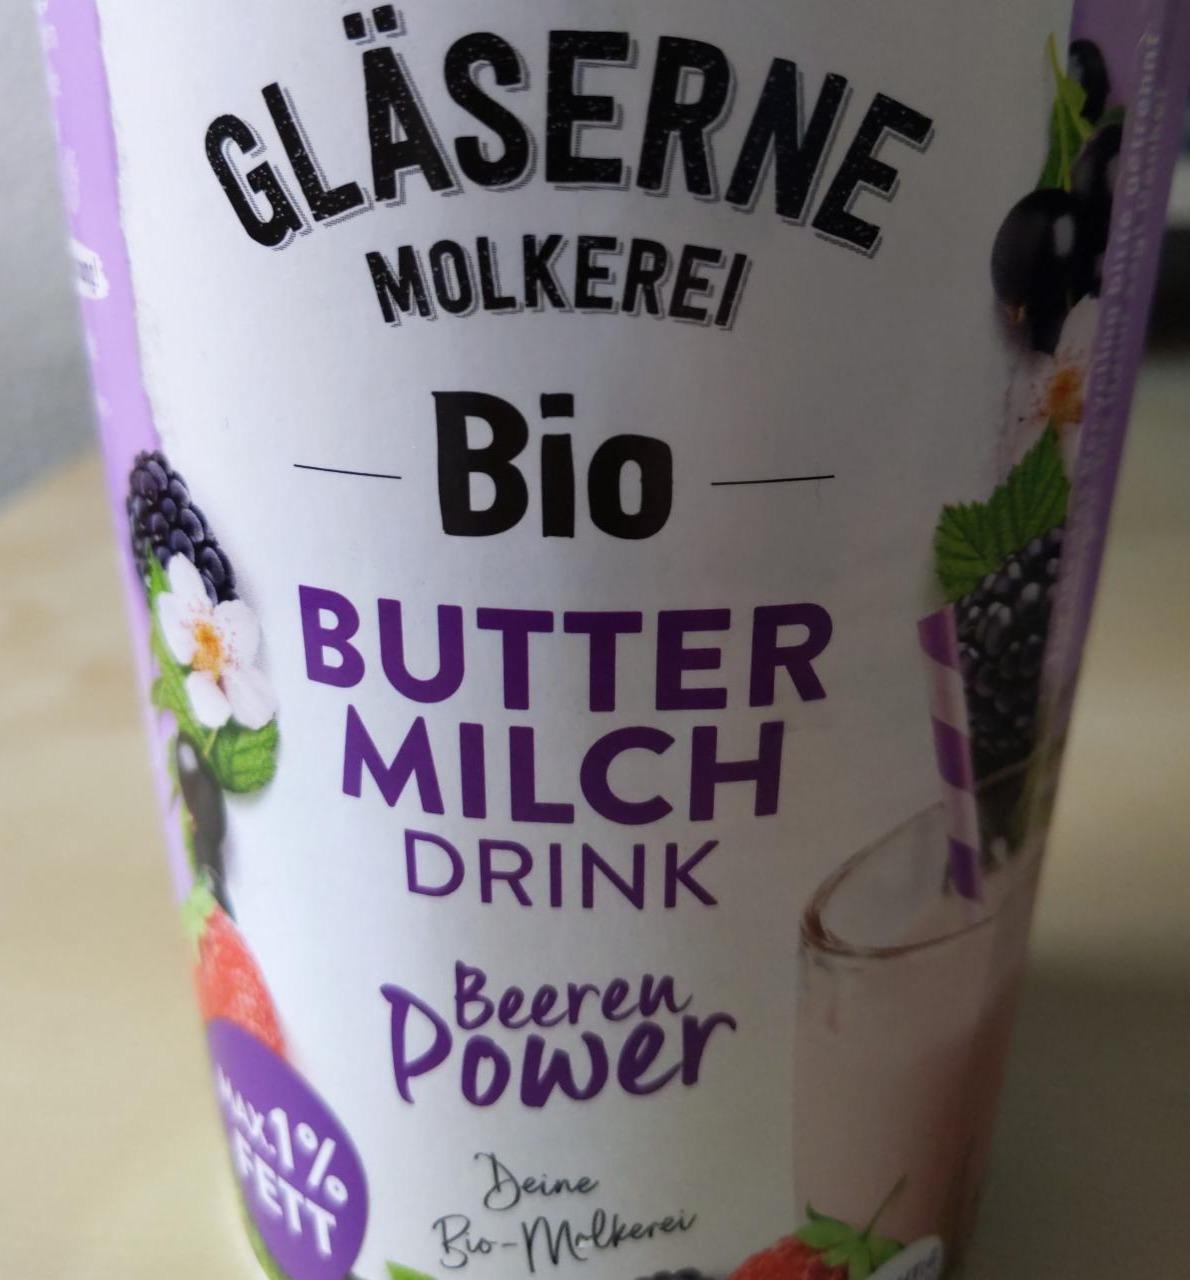 Bio-Buttermilch Drink Beeren Power Gläserne Molkerei - kalorie, kJ a ...